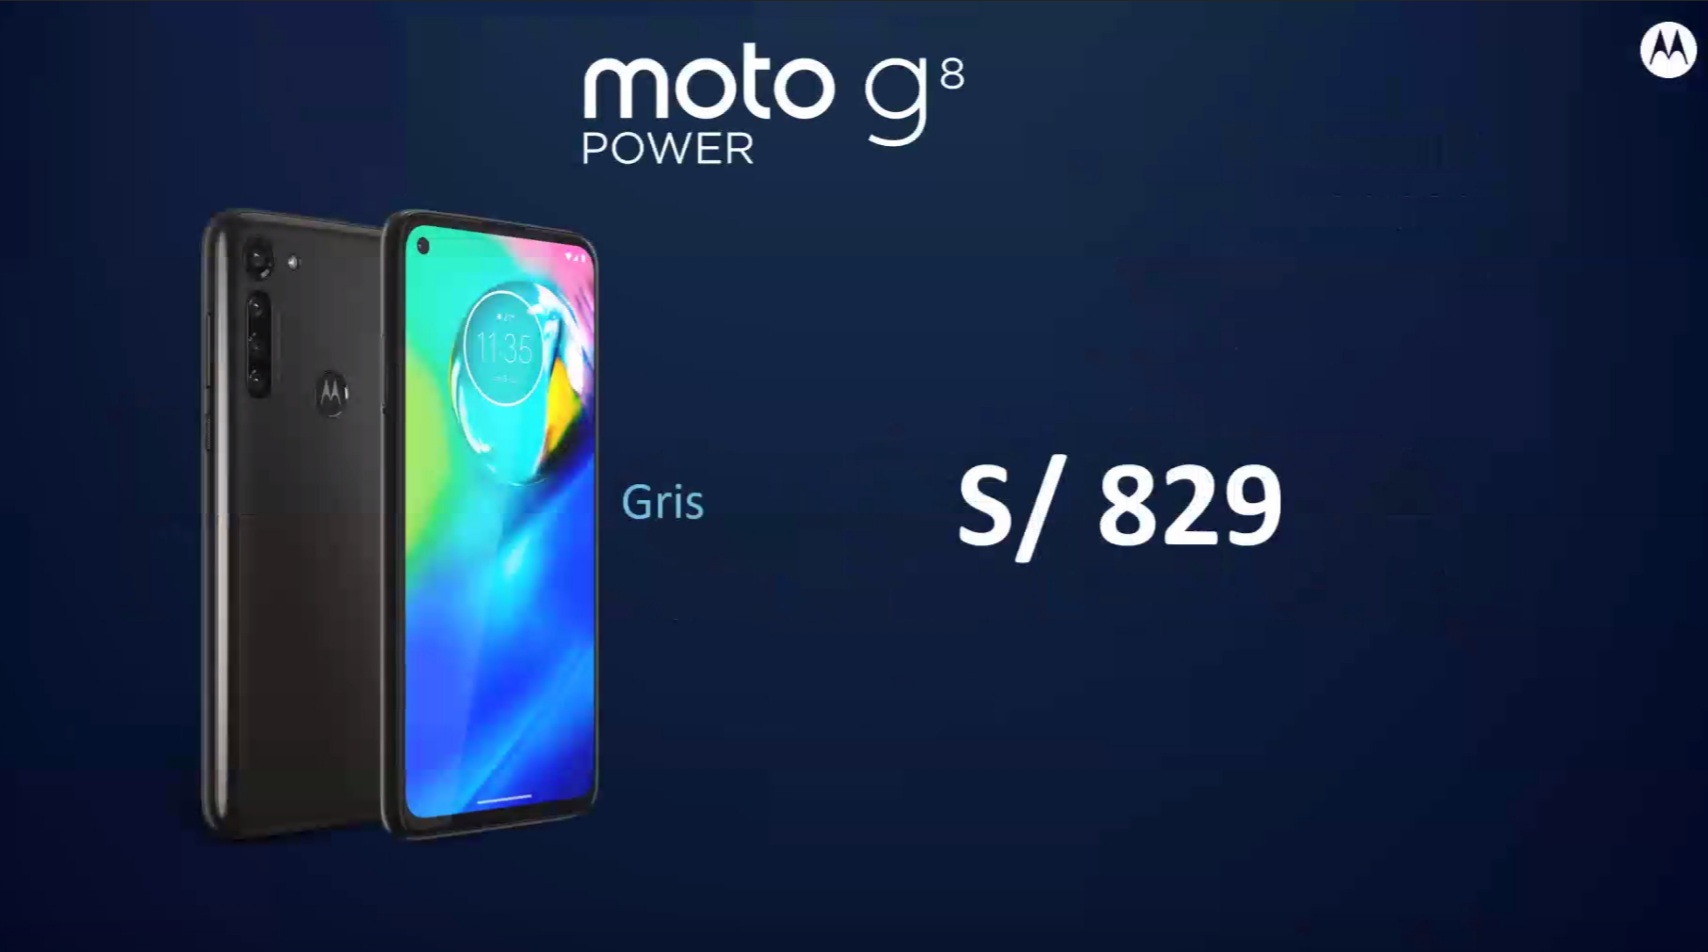 Moto G8 Power